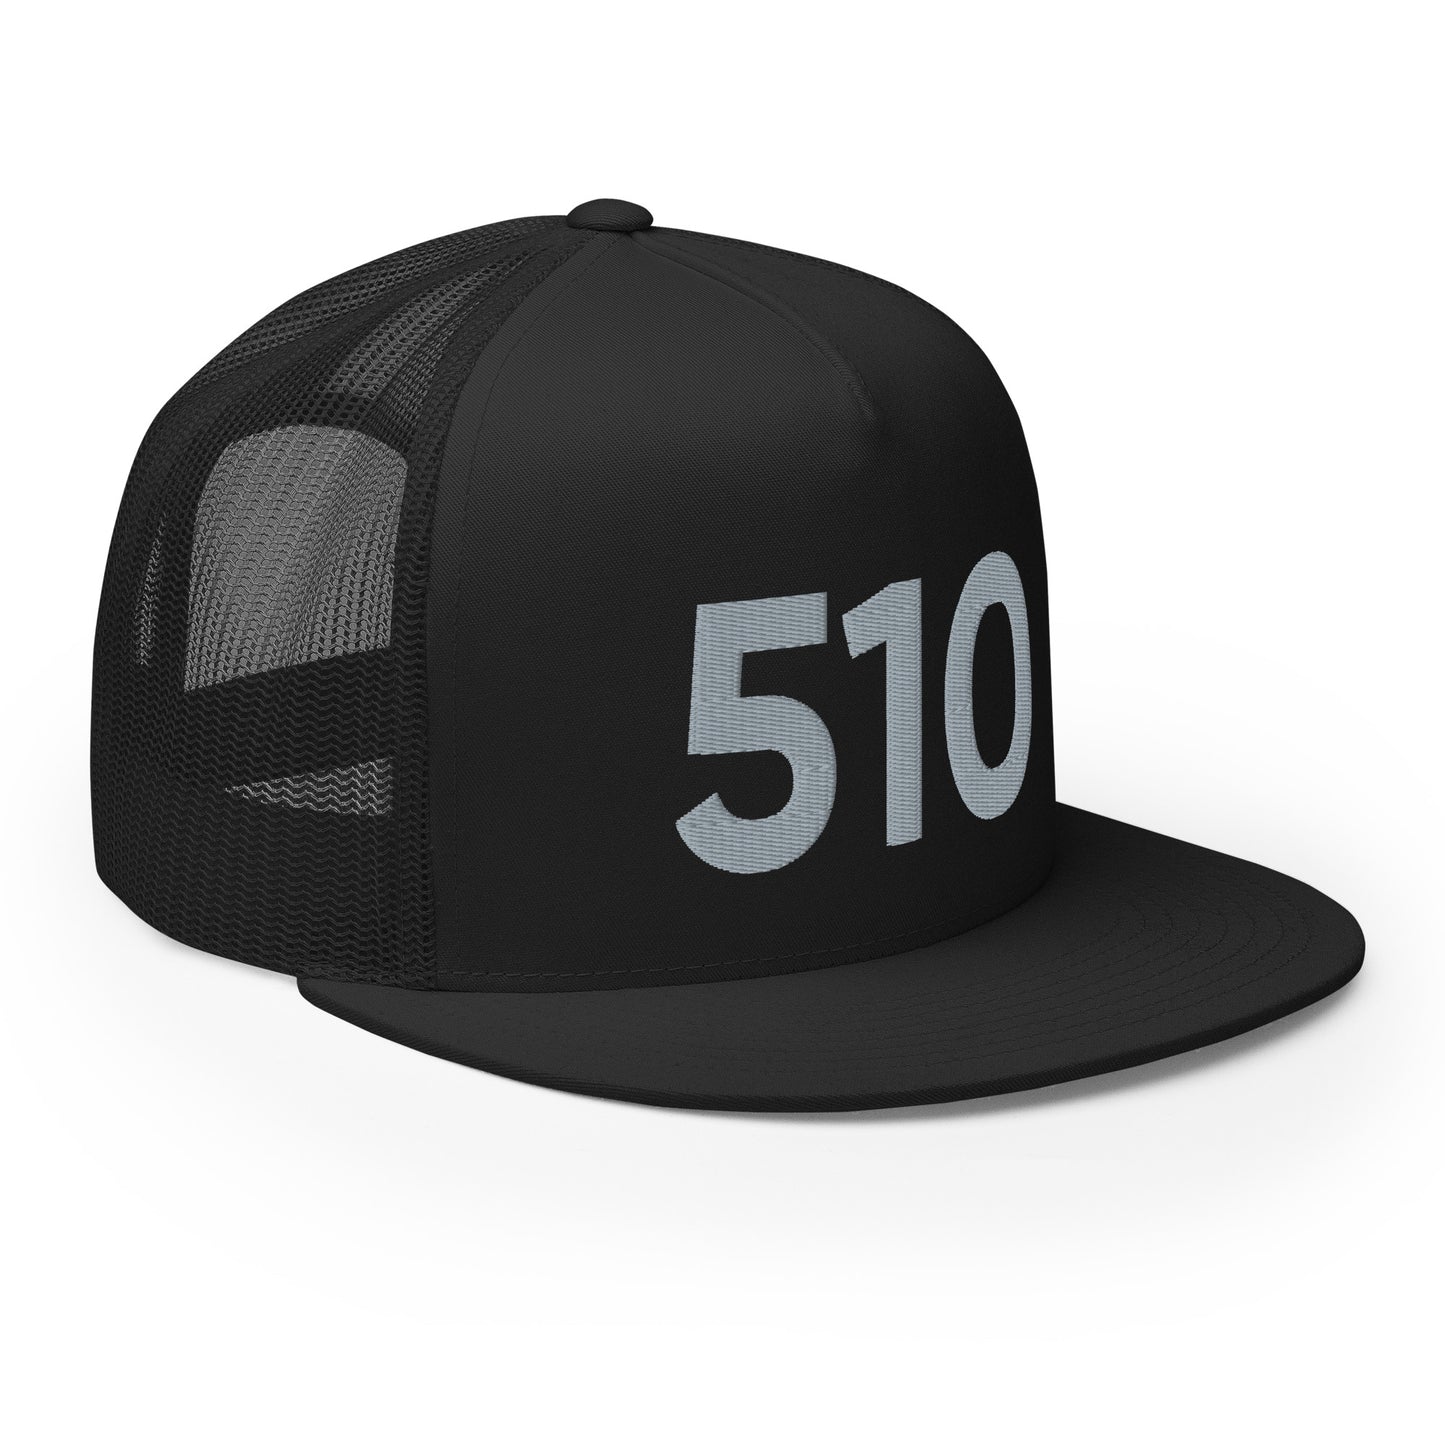 510 OAK Trucker Hat